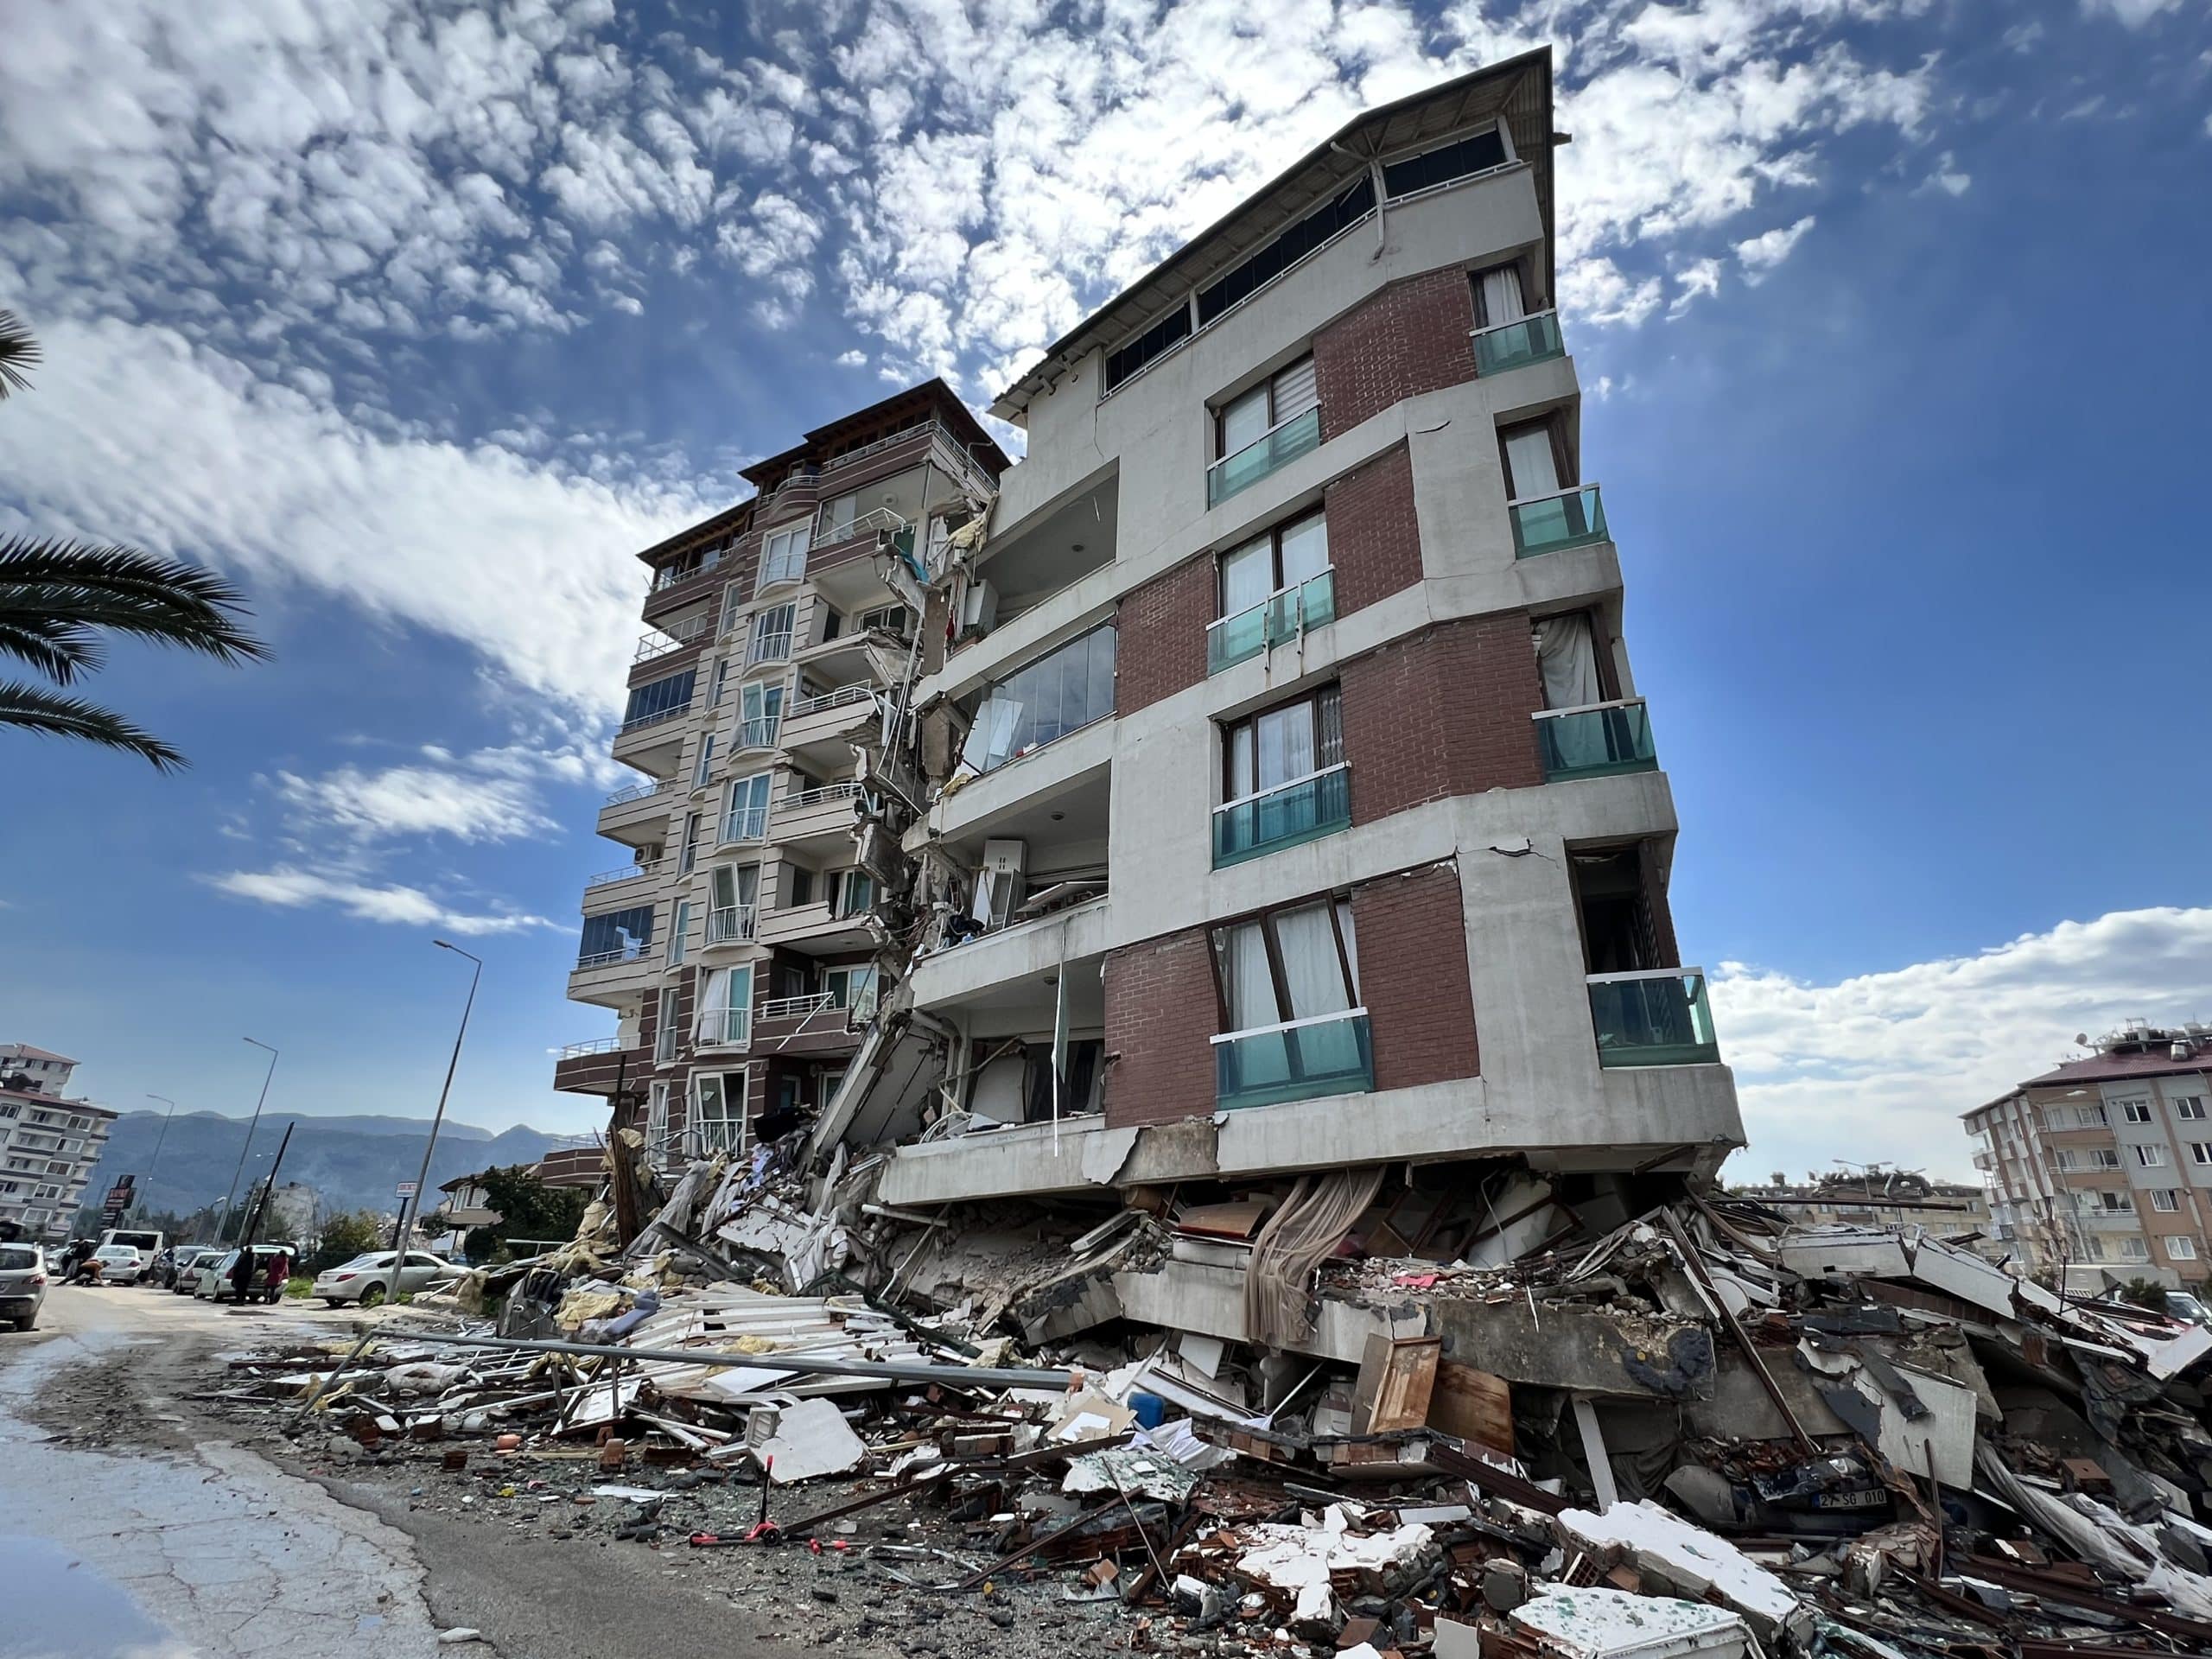 Швейцария солидарна с жертвами землетрясения в Сирии и Турции